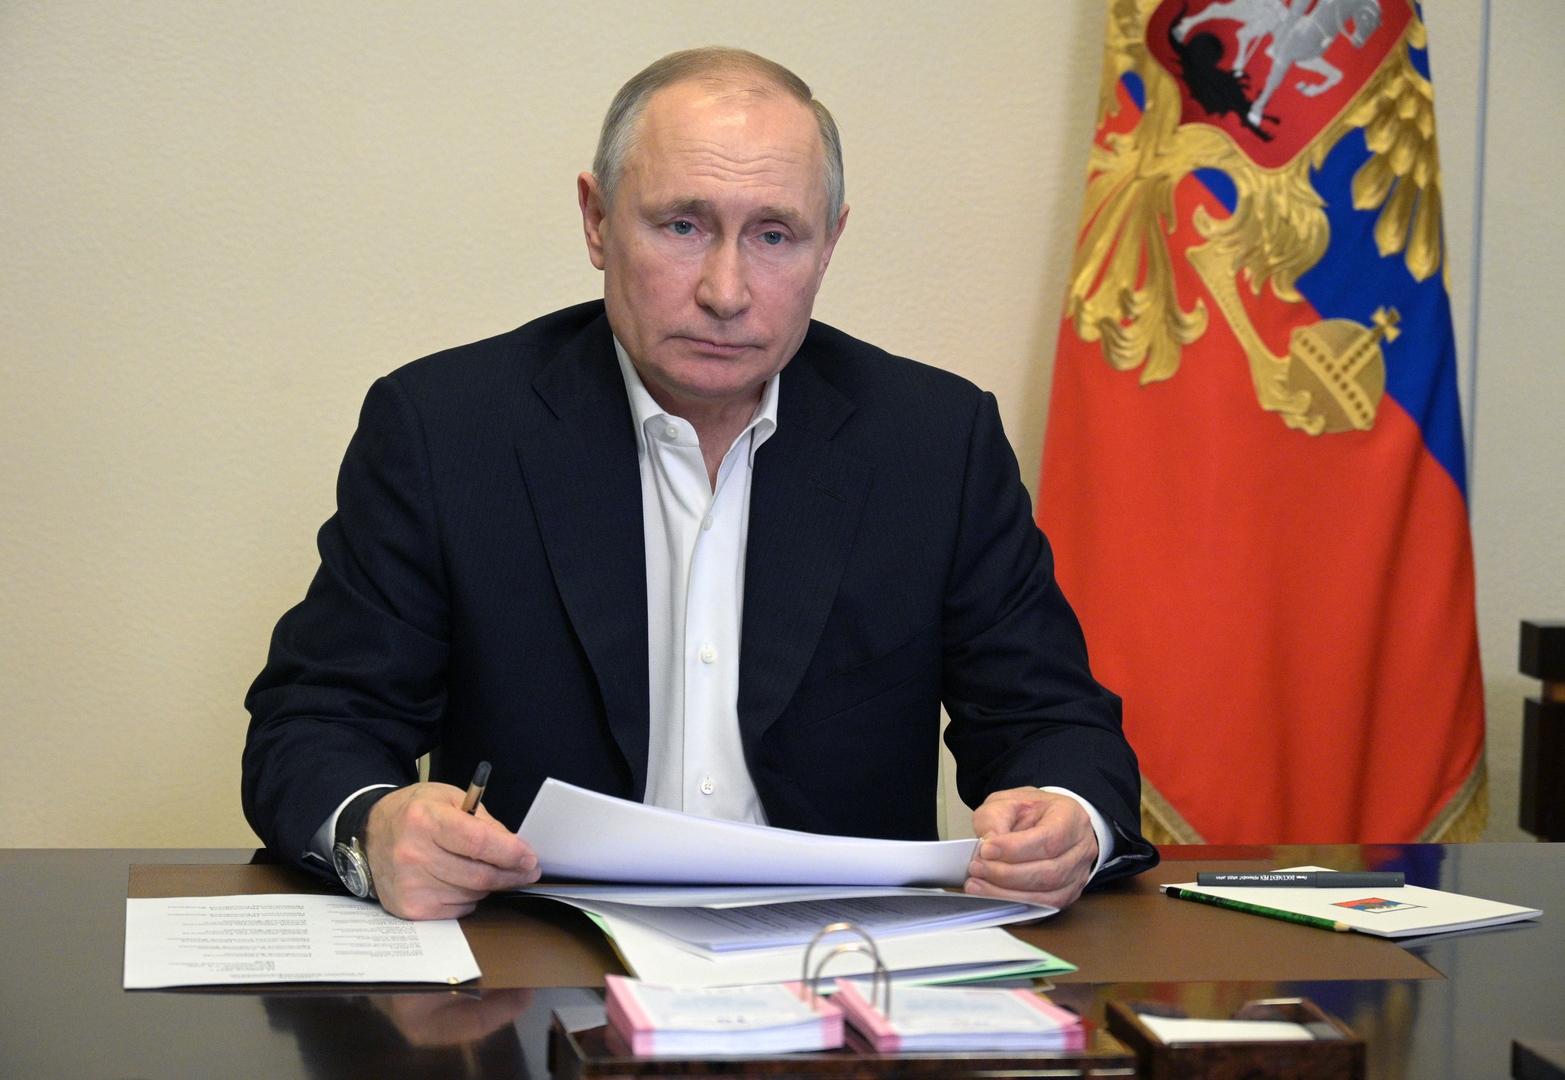 أبرز بنود رسالة بوتين الماضية إلى الجمعية الفدرالية وتوقعات حول رسالة اليوم